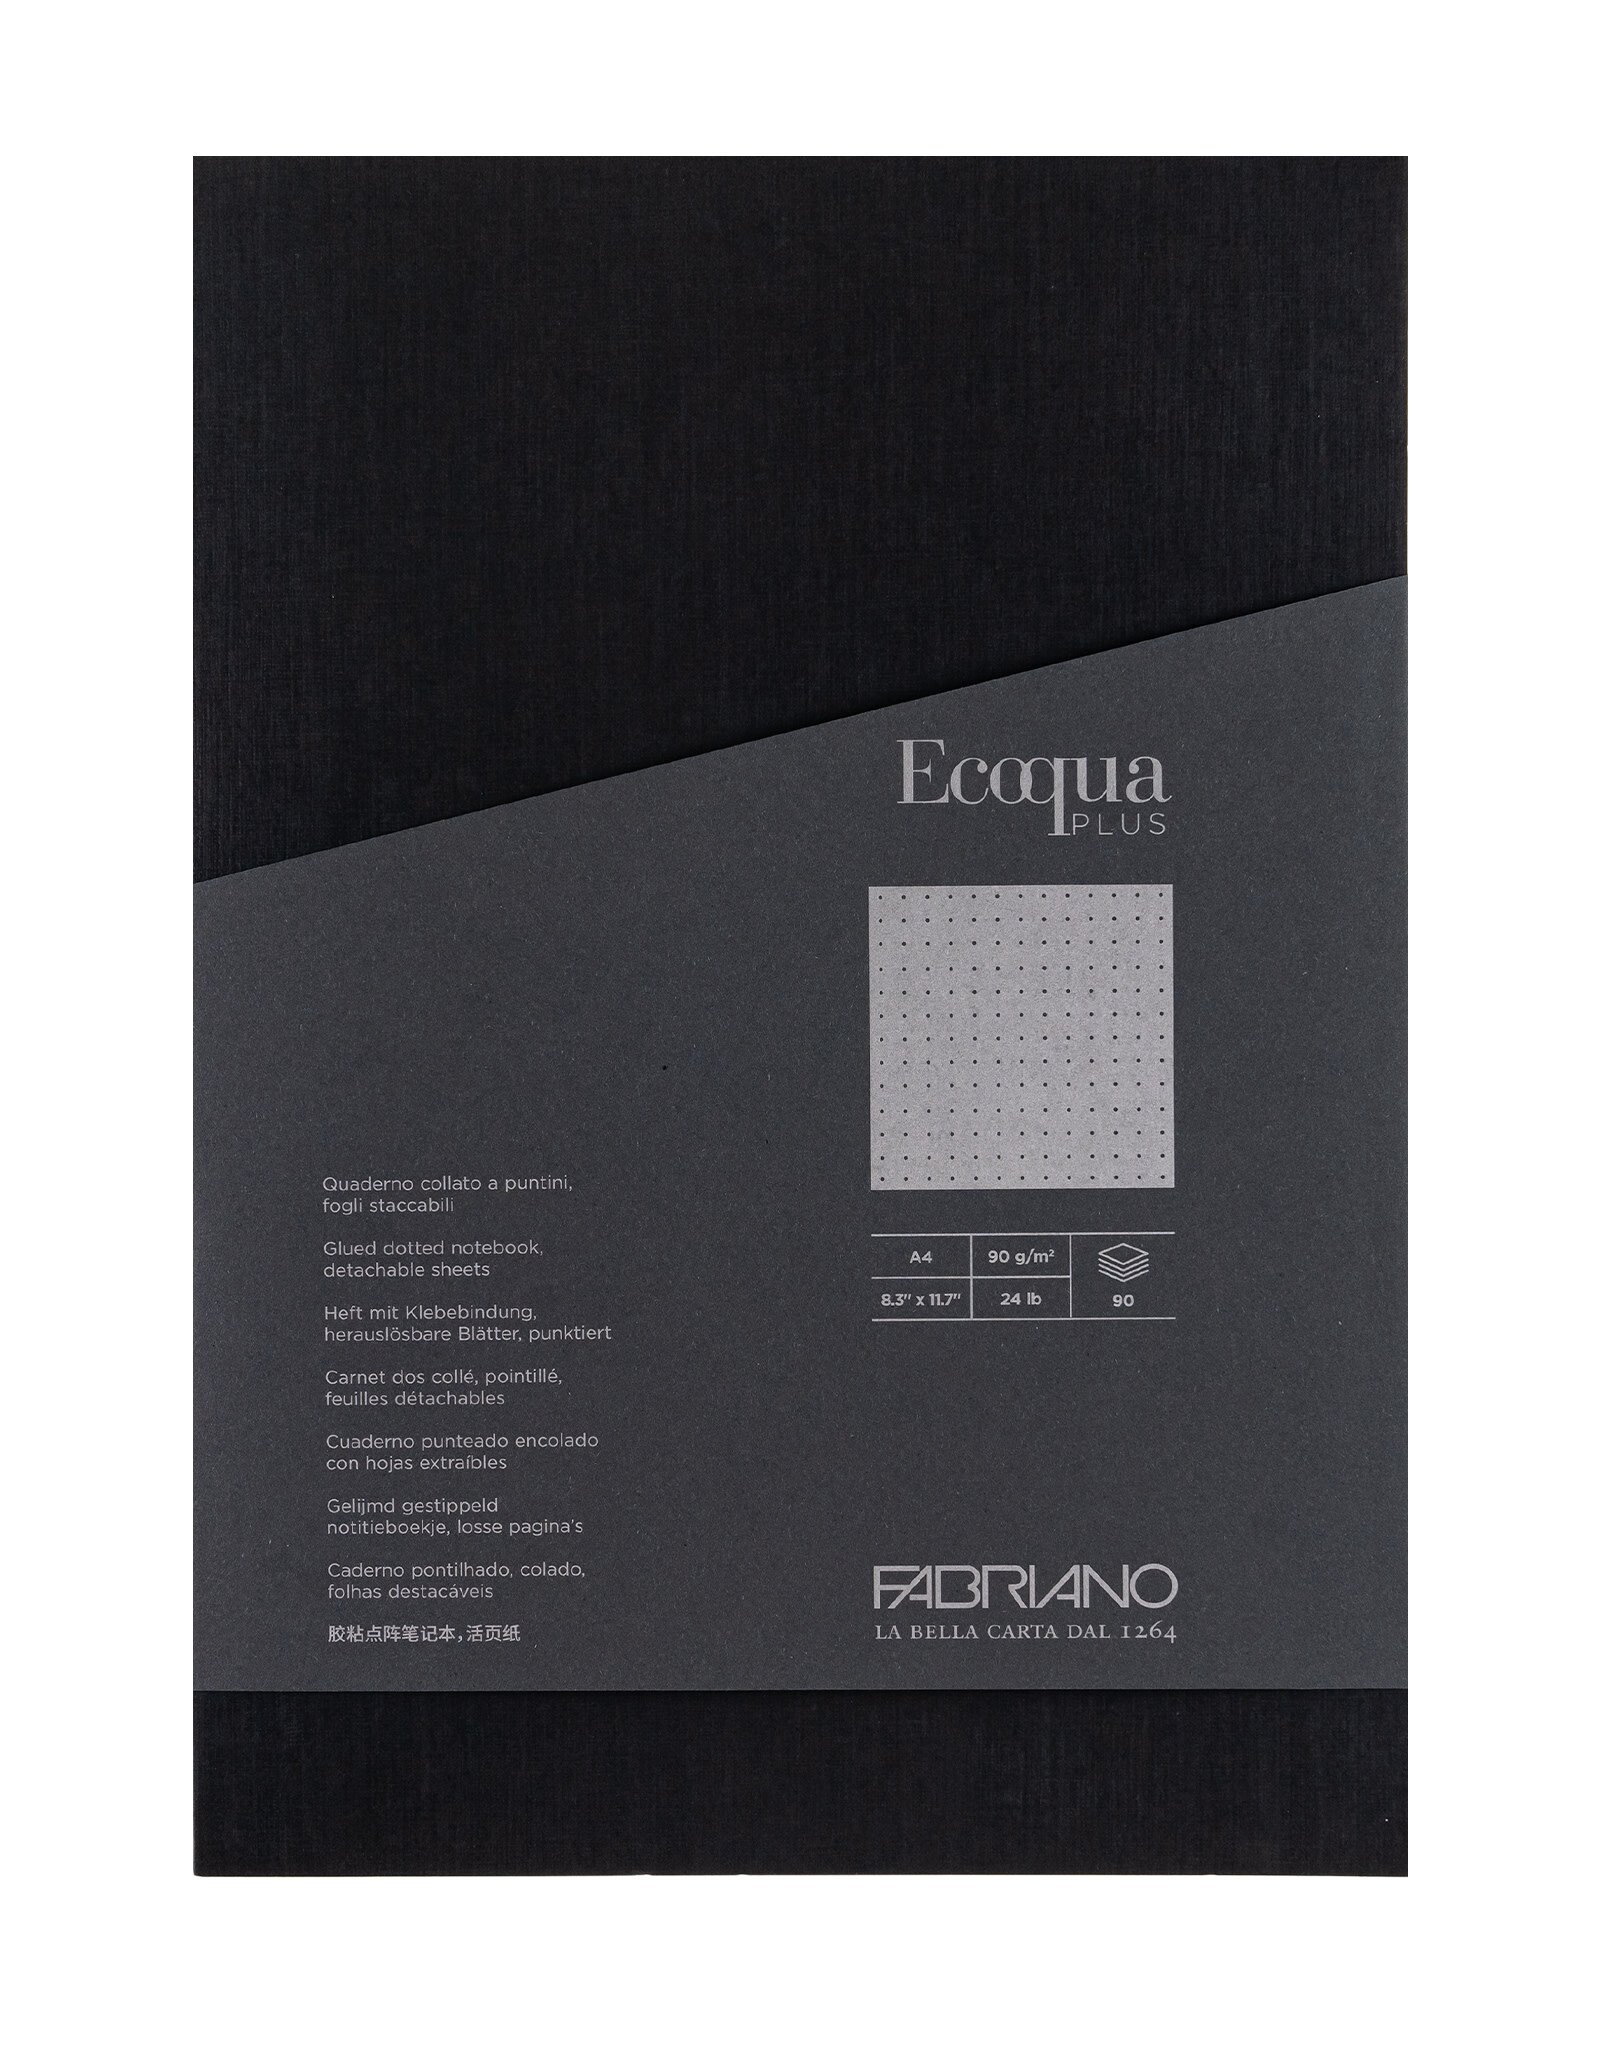 Ecoqua Plus Glue Bound Notebook, Black, A4, Dotted